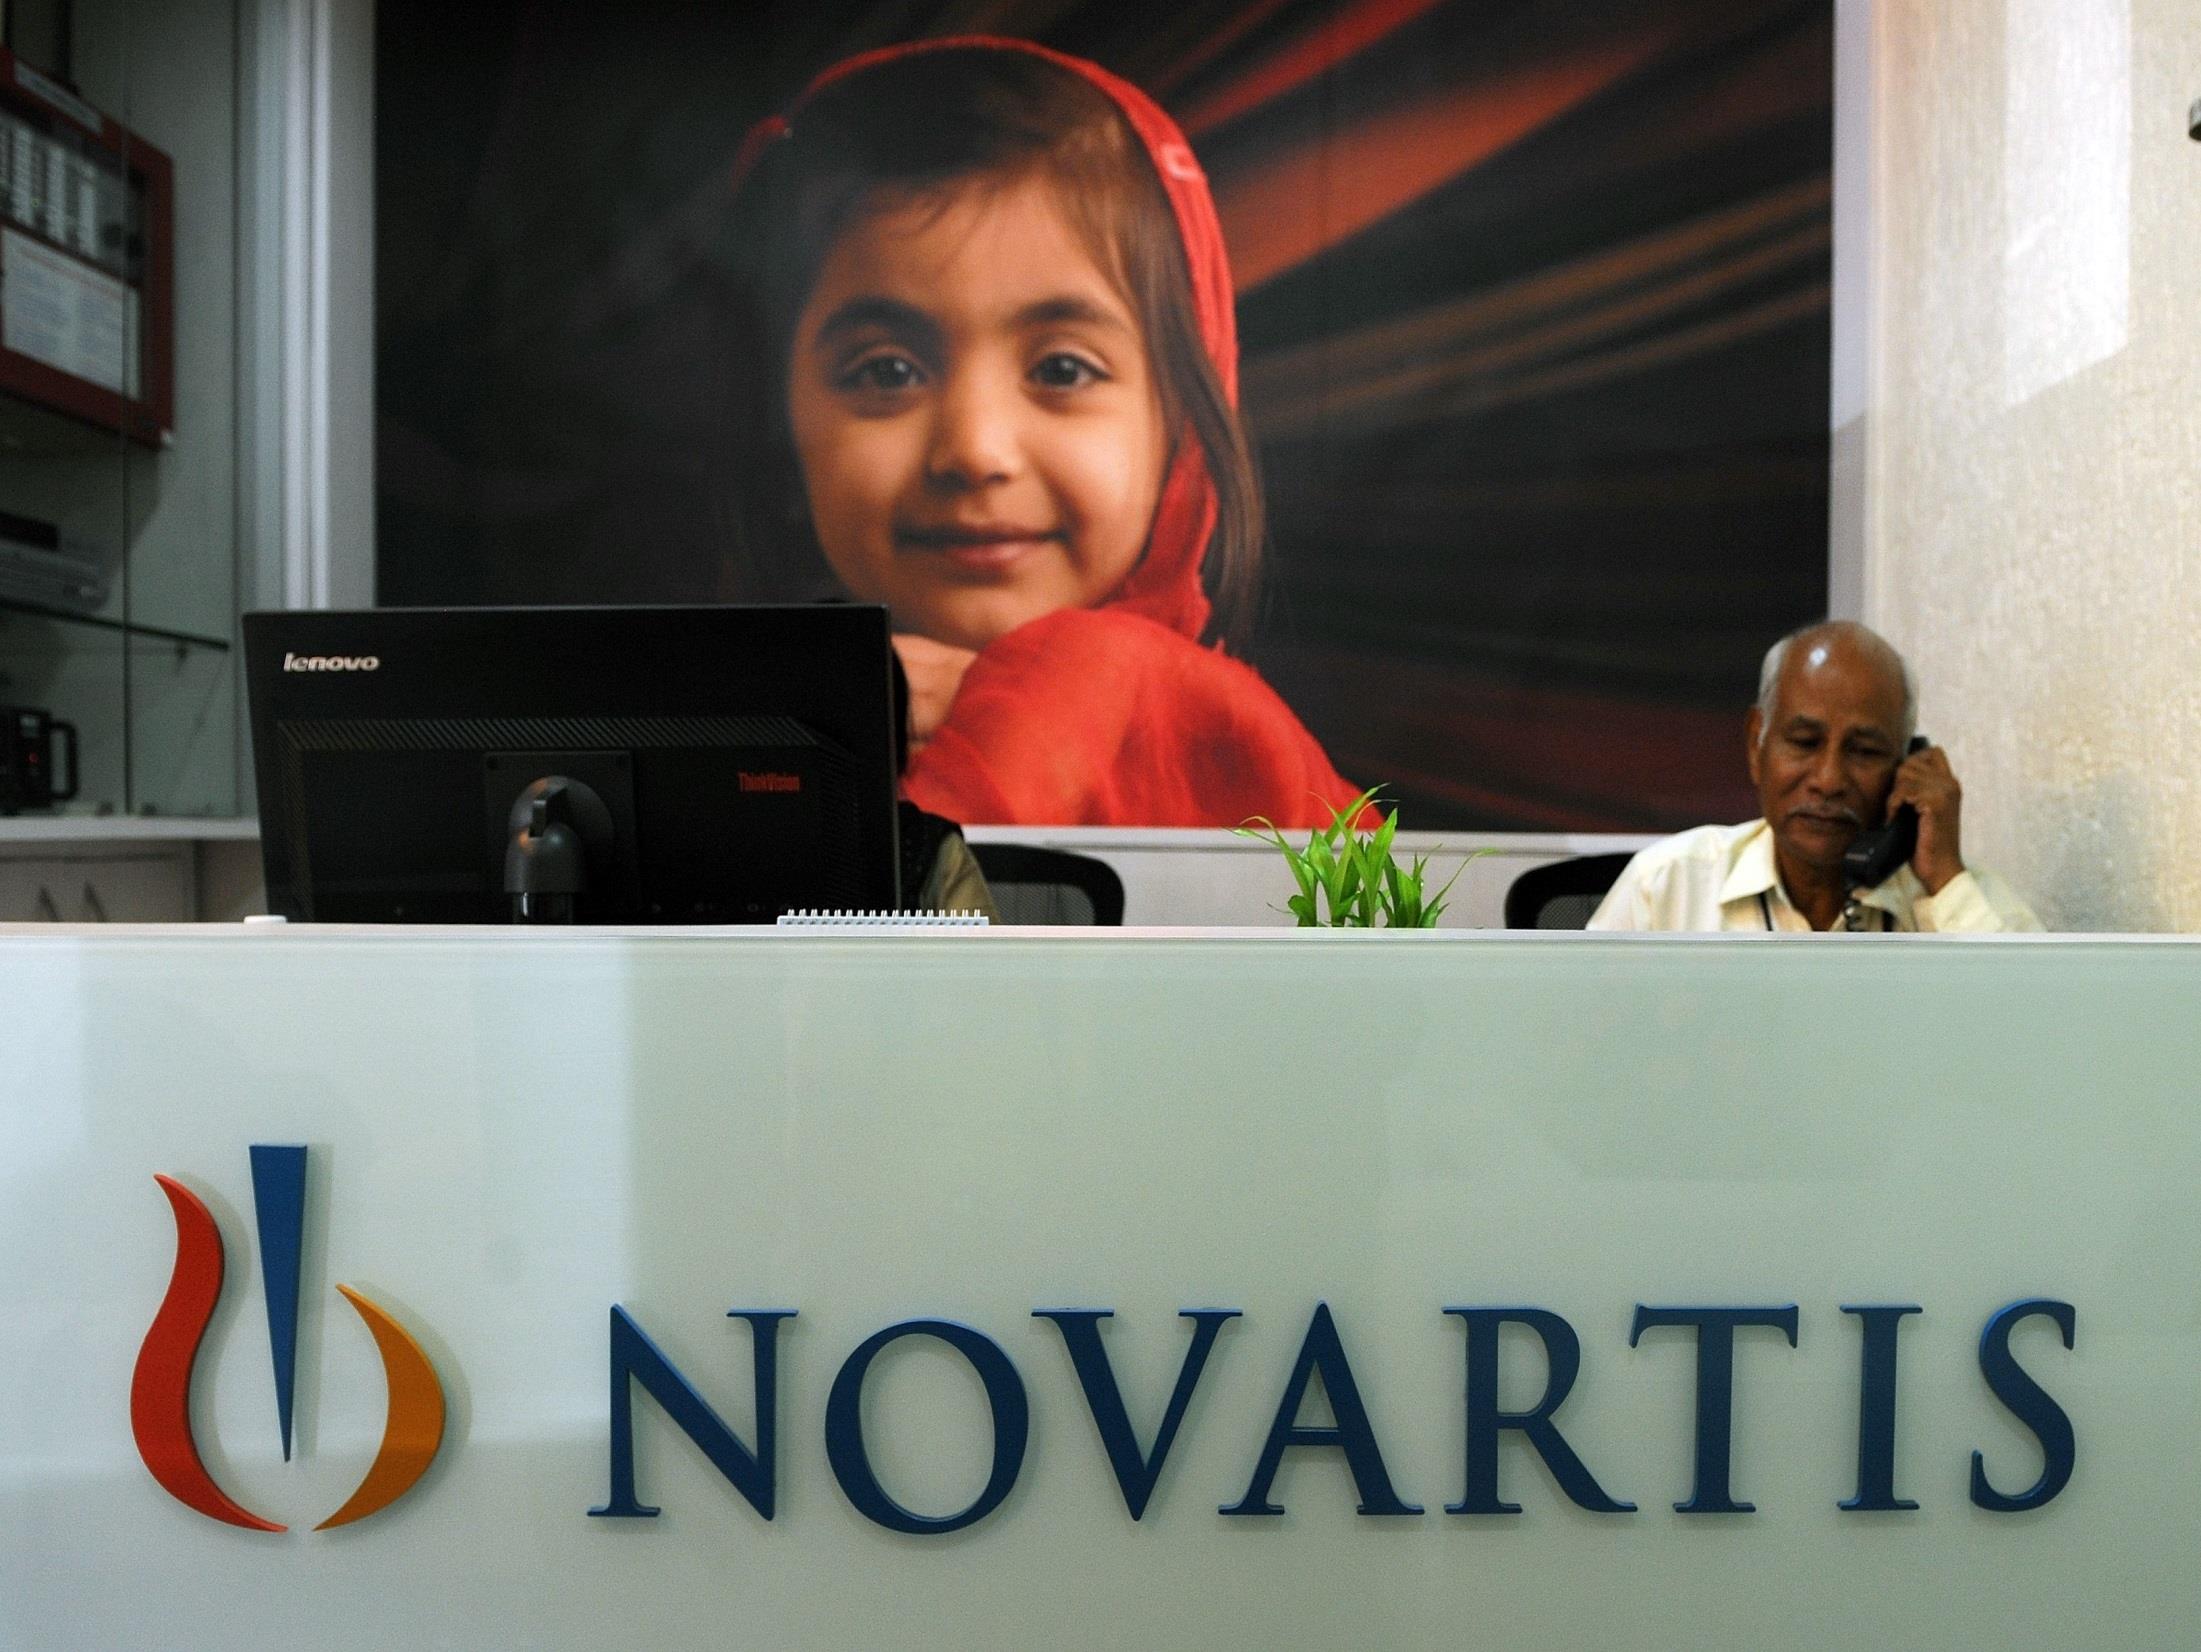 Novartis é um grupo farmacêutico suíço criado em 1996 pela fusão de Ciba-Geigy Índia e Sandoz com